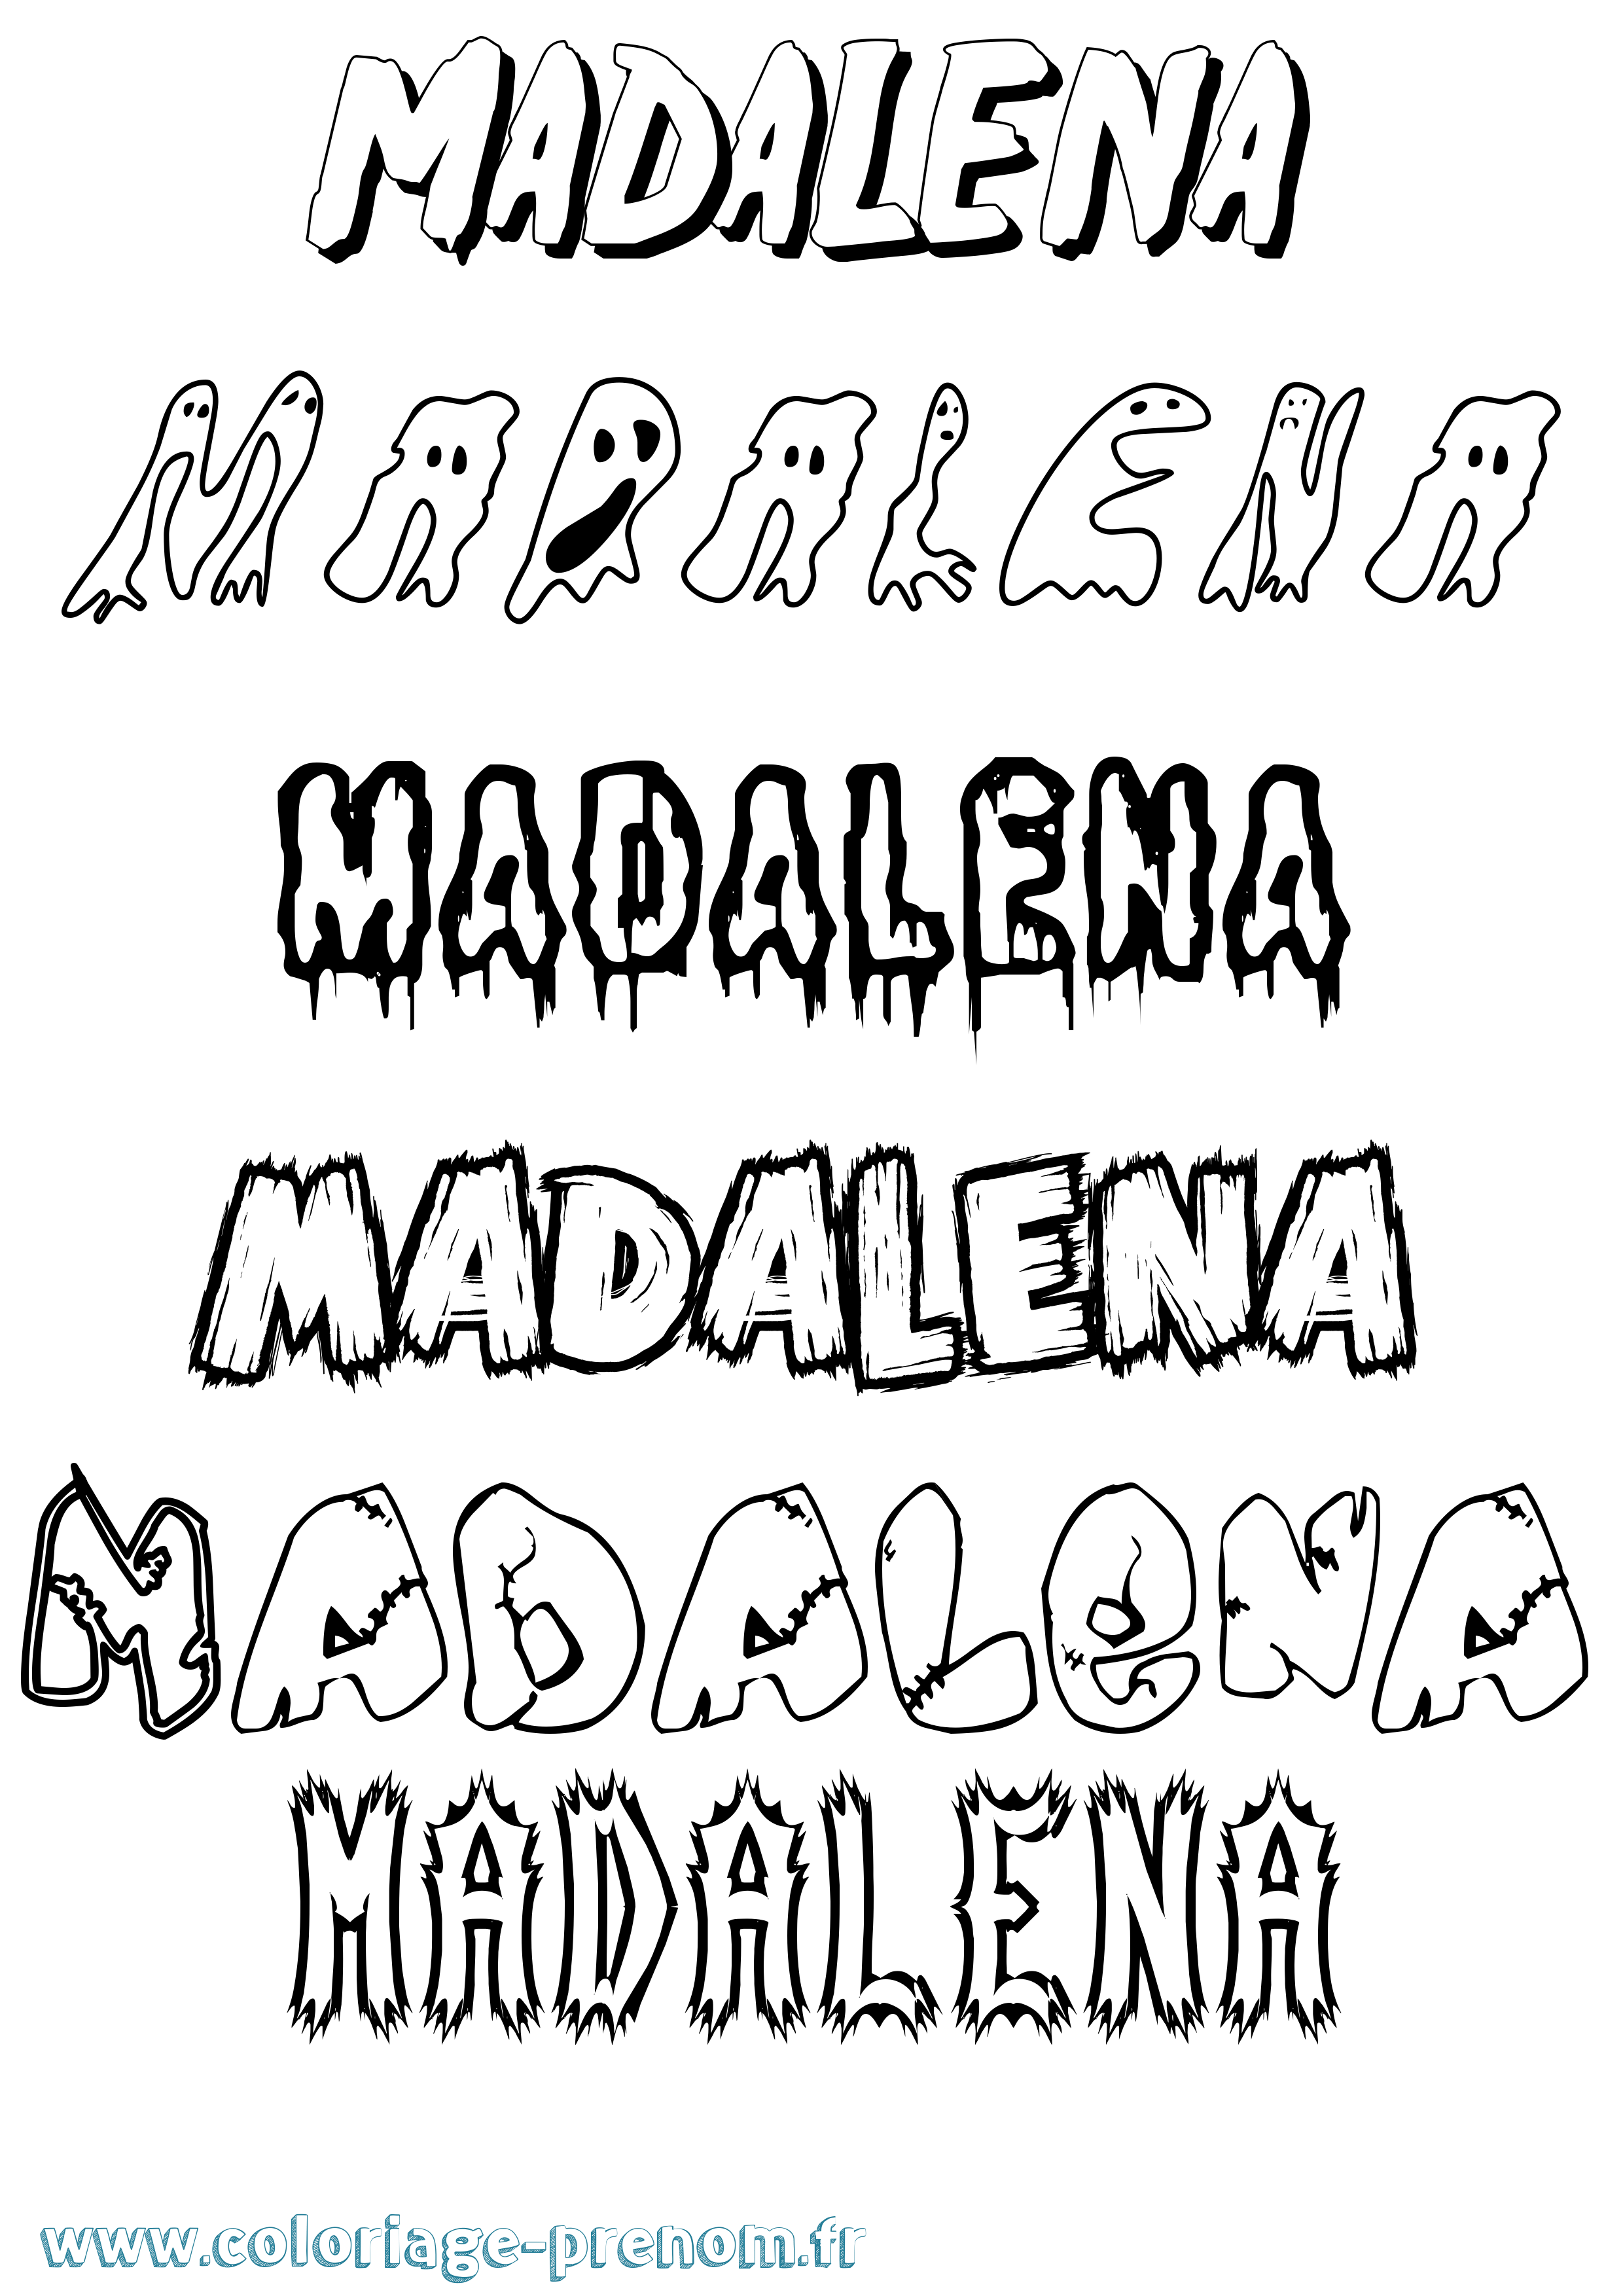 Coloriage prénom Madalena Frisson